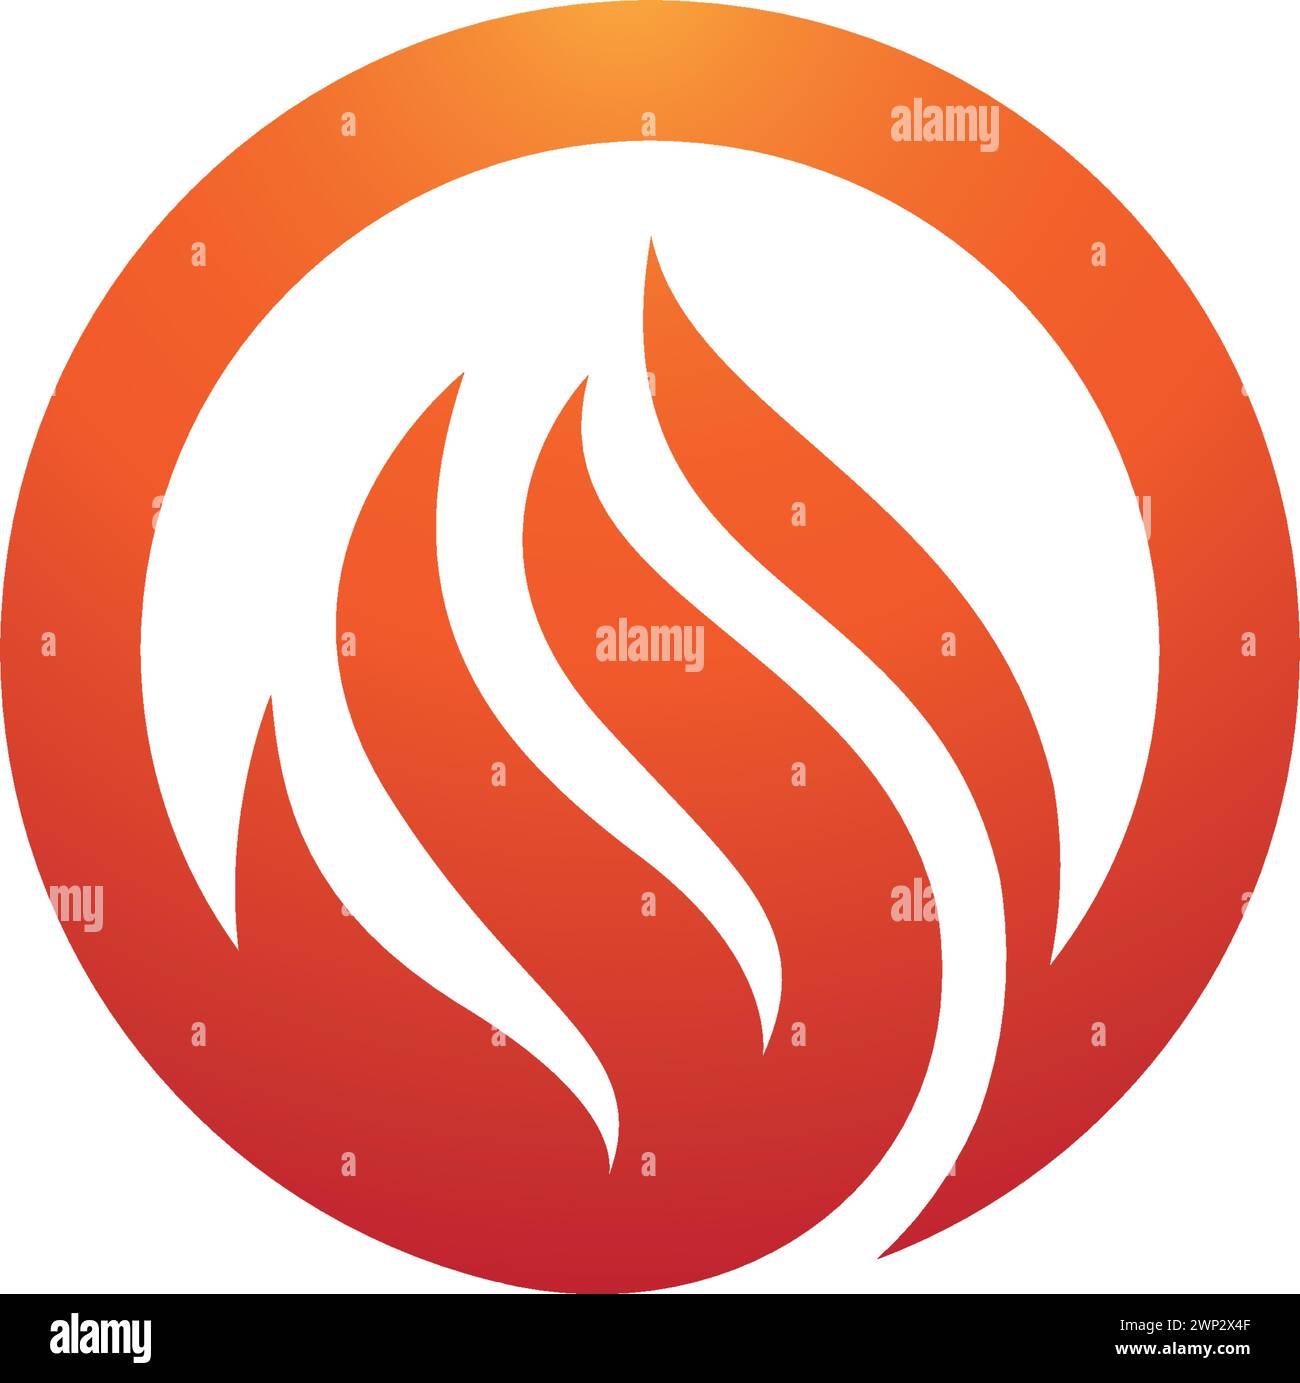 Fire flame Logo Template vector icon Oil, gas and energy logo concept Stock Vector